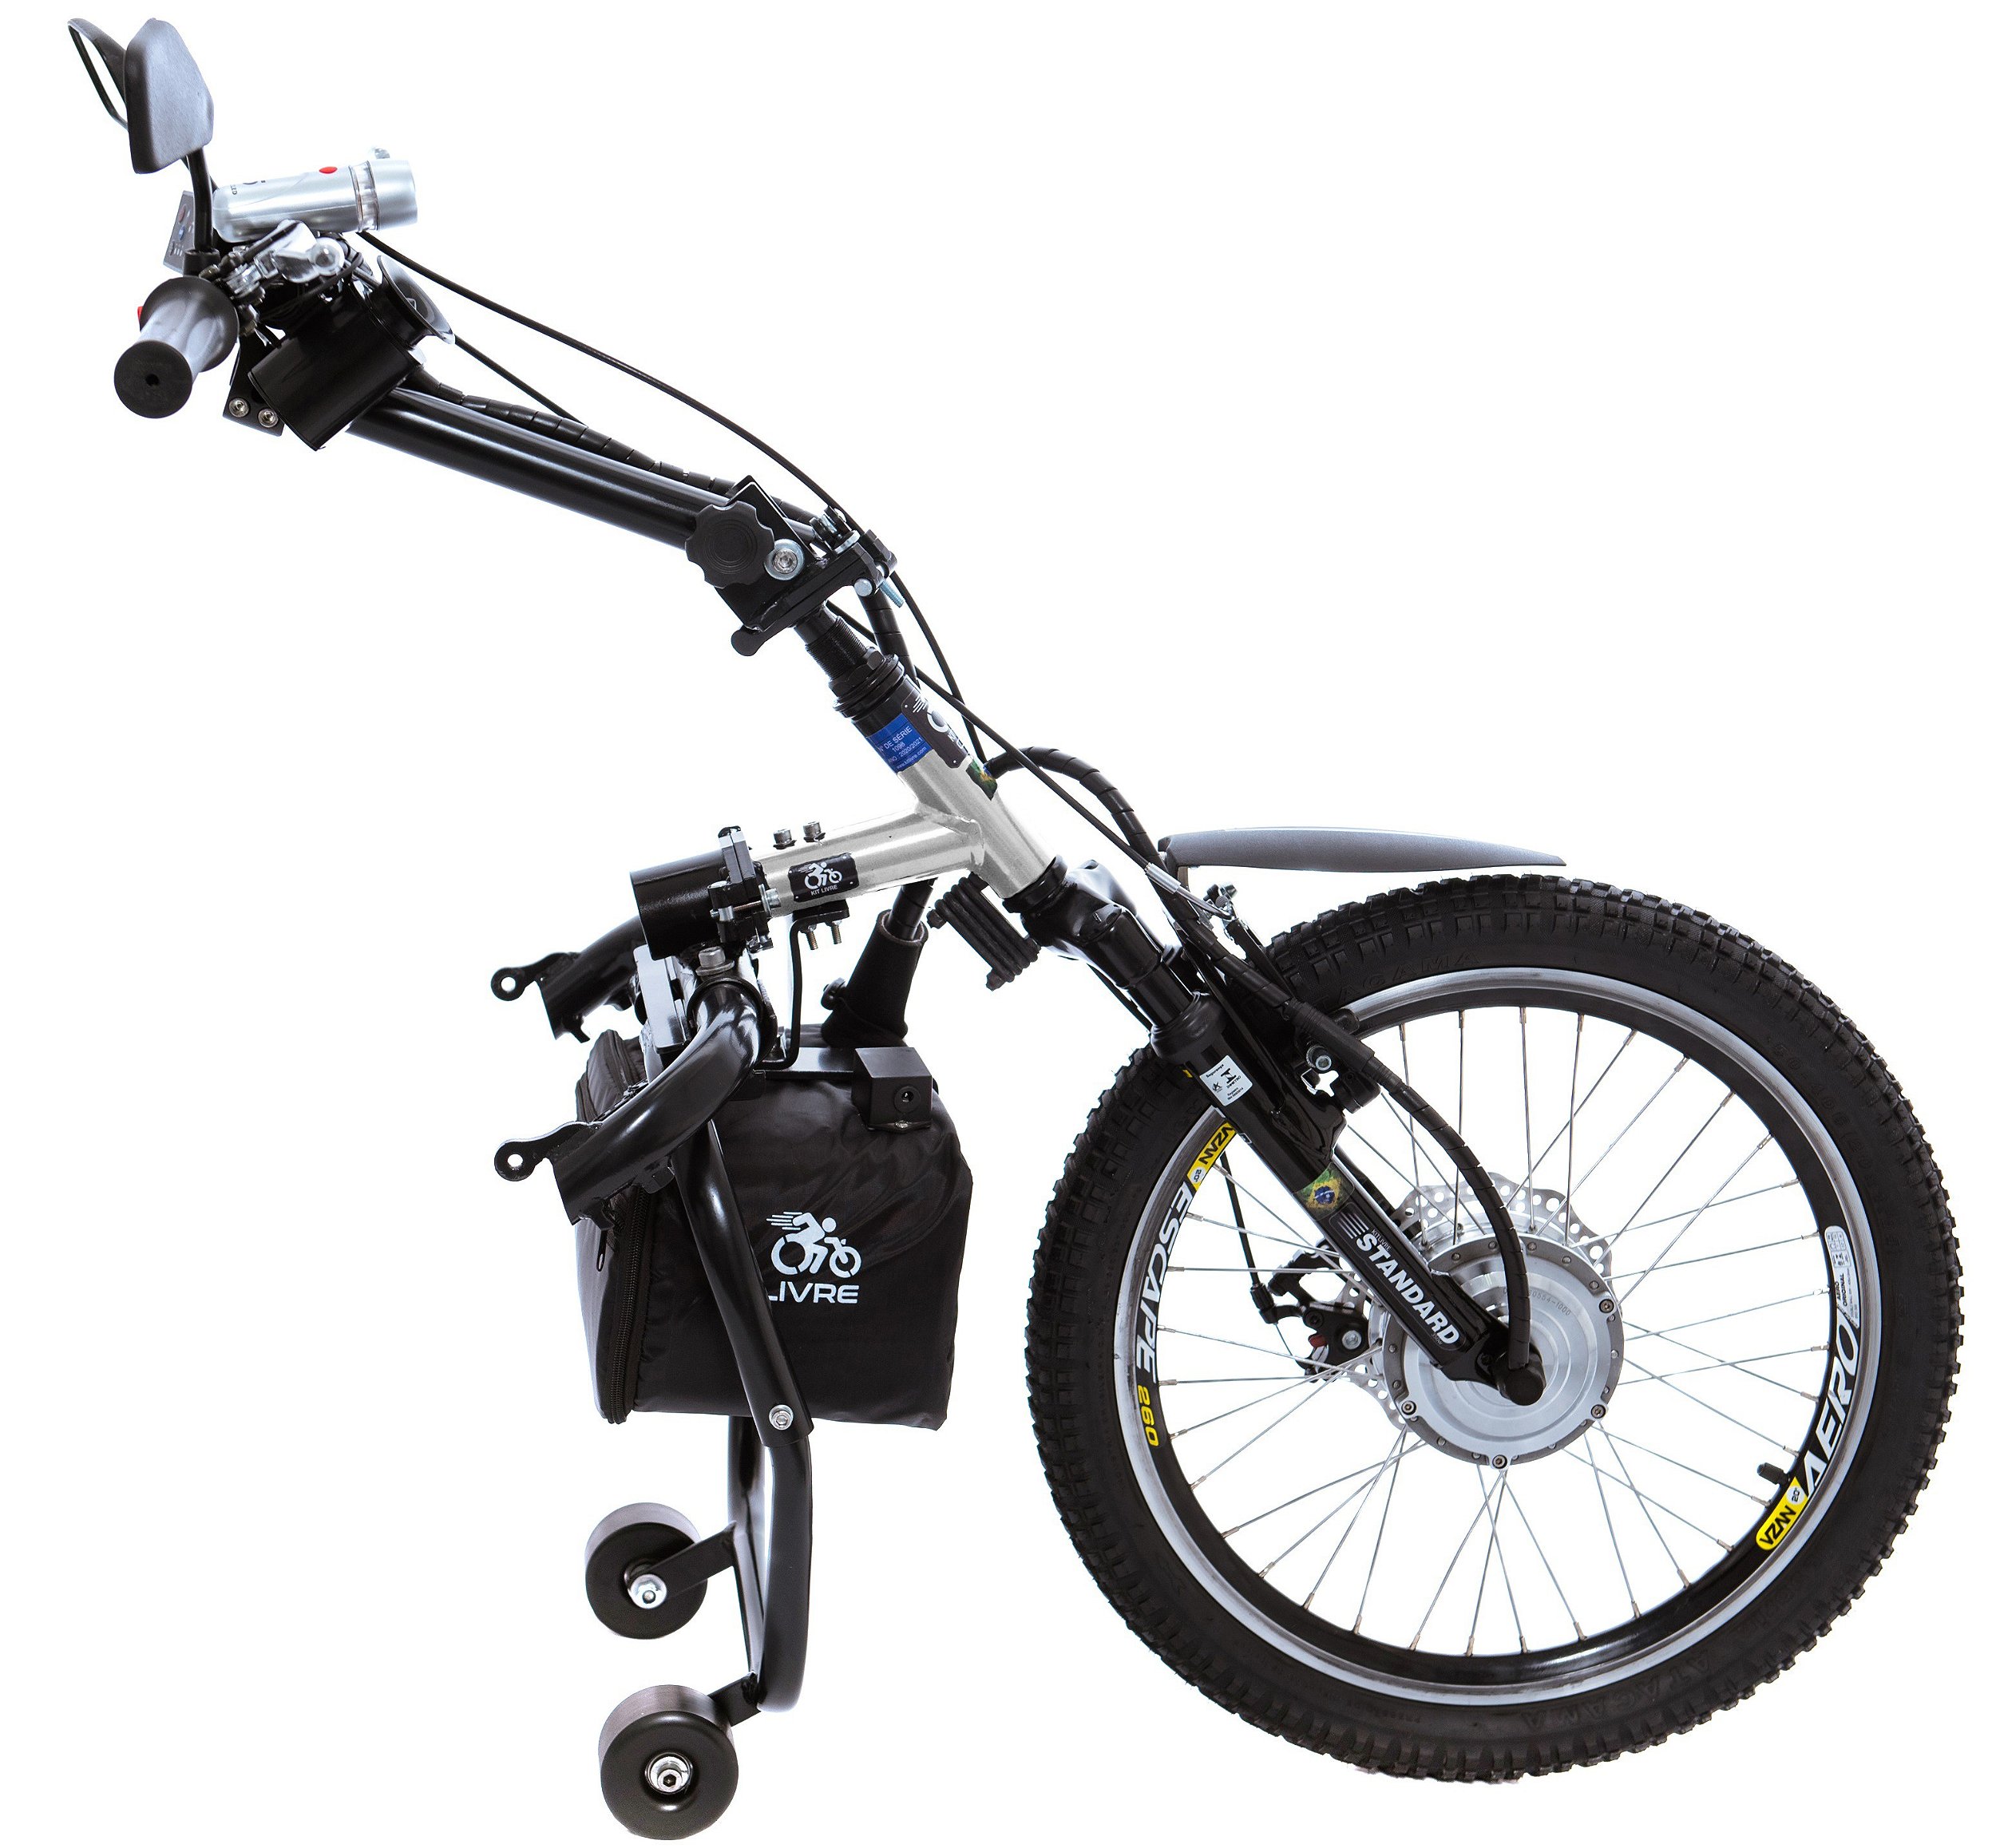 Kit de motorização de Cadeira de Rodas KIT LIVRE Standard 350W - KIT LIVRE  - Transformando vidas